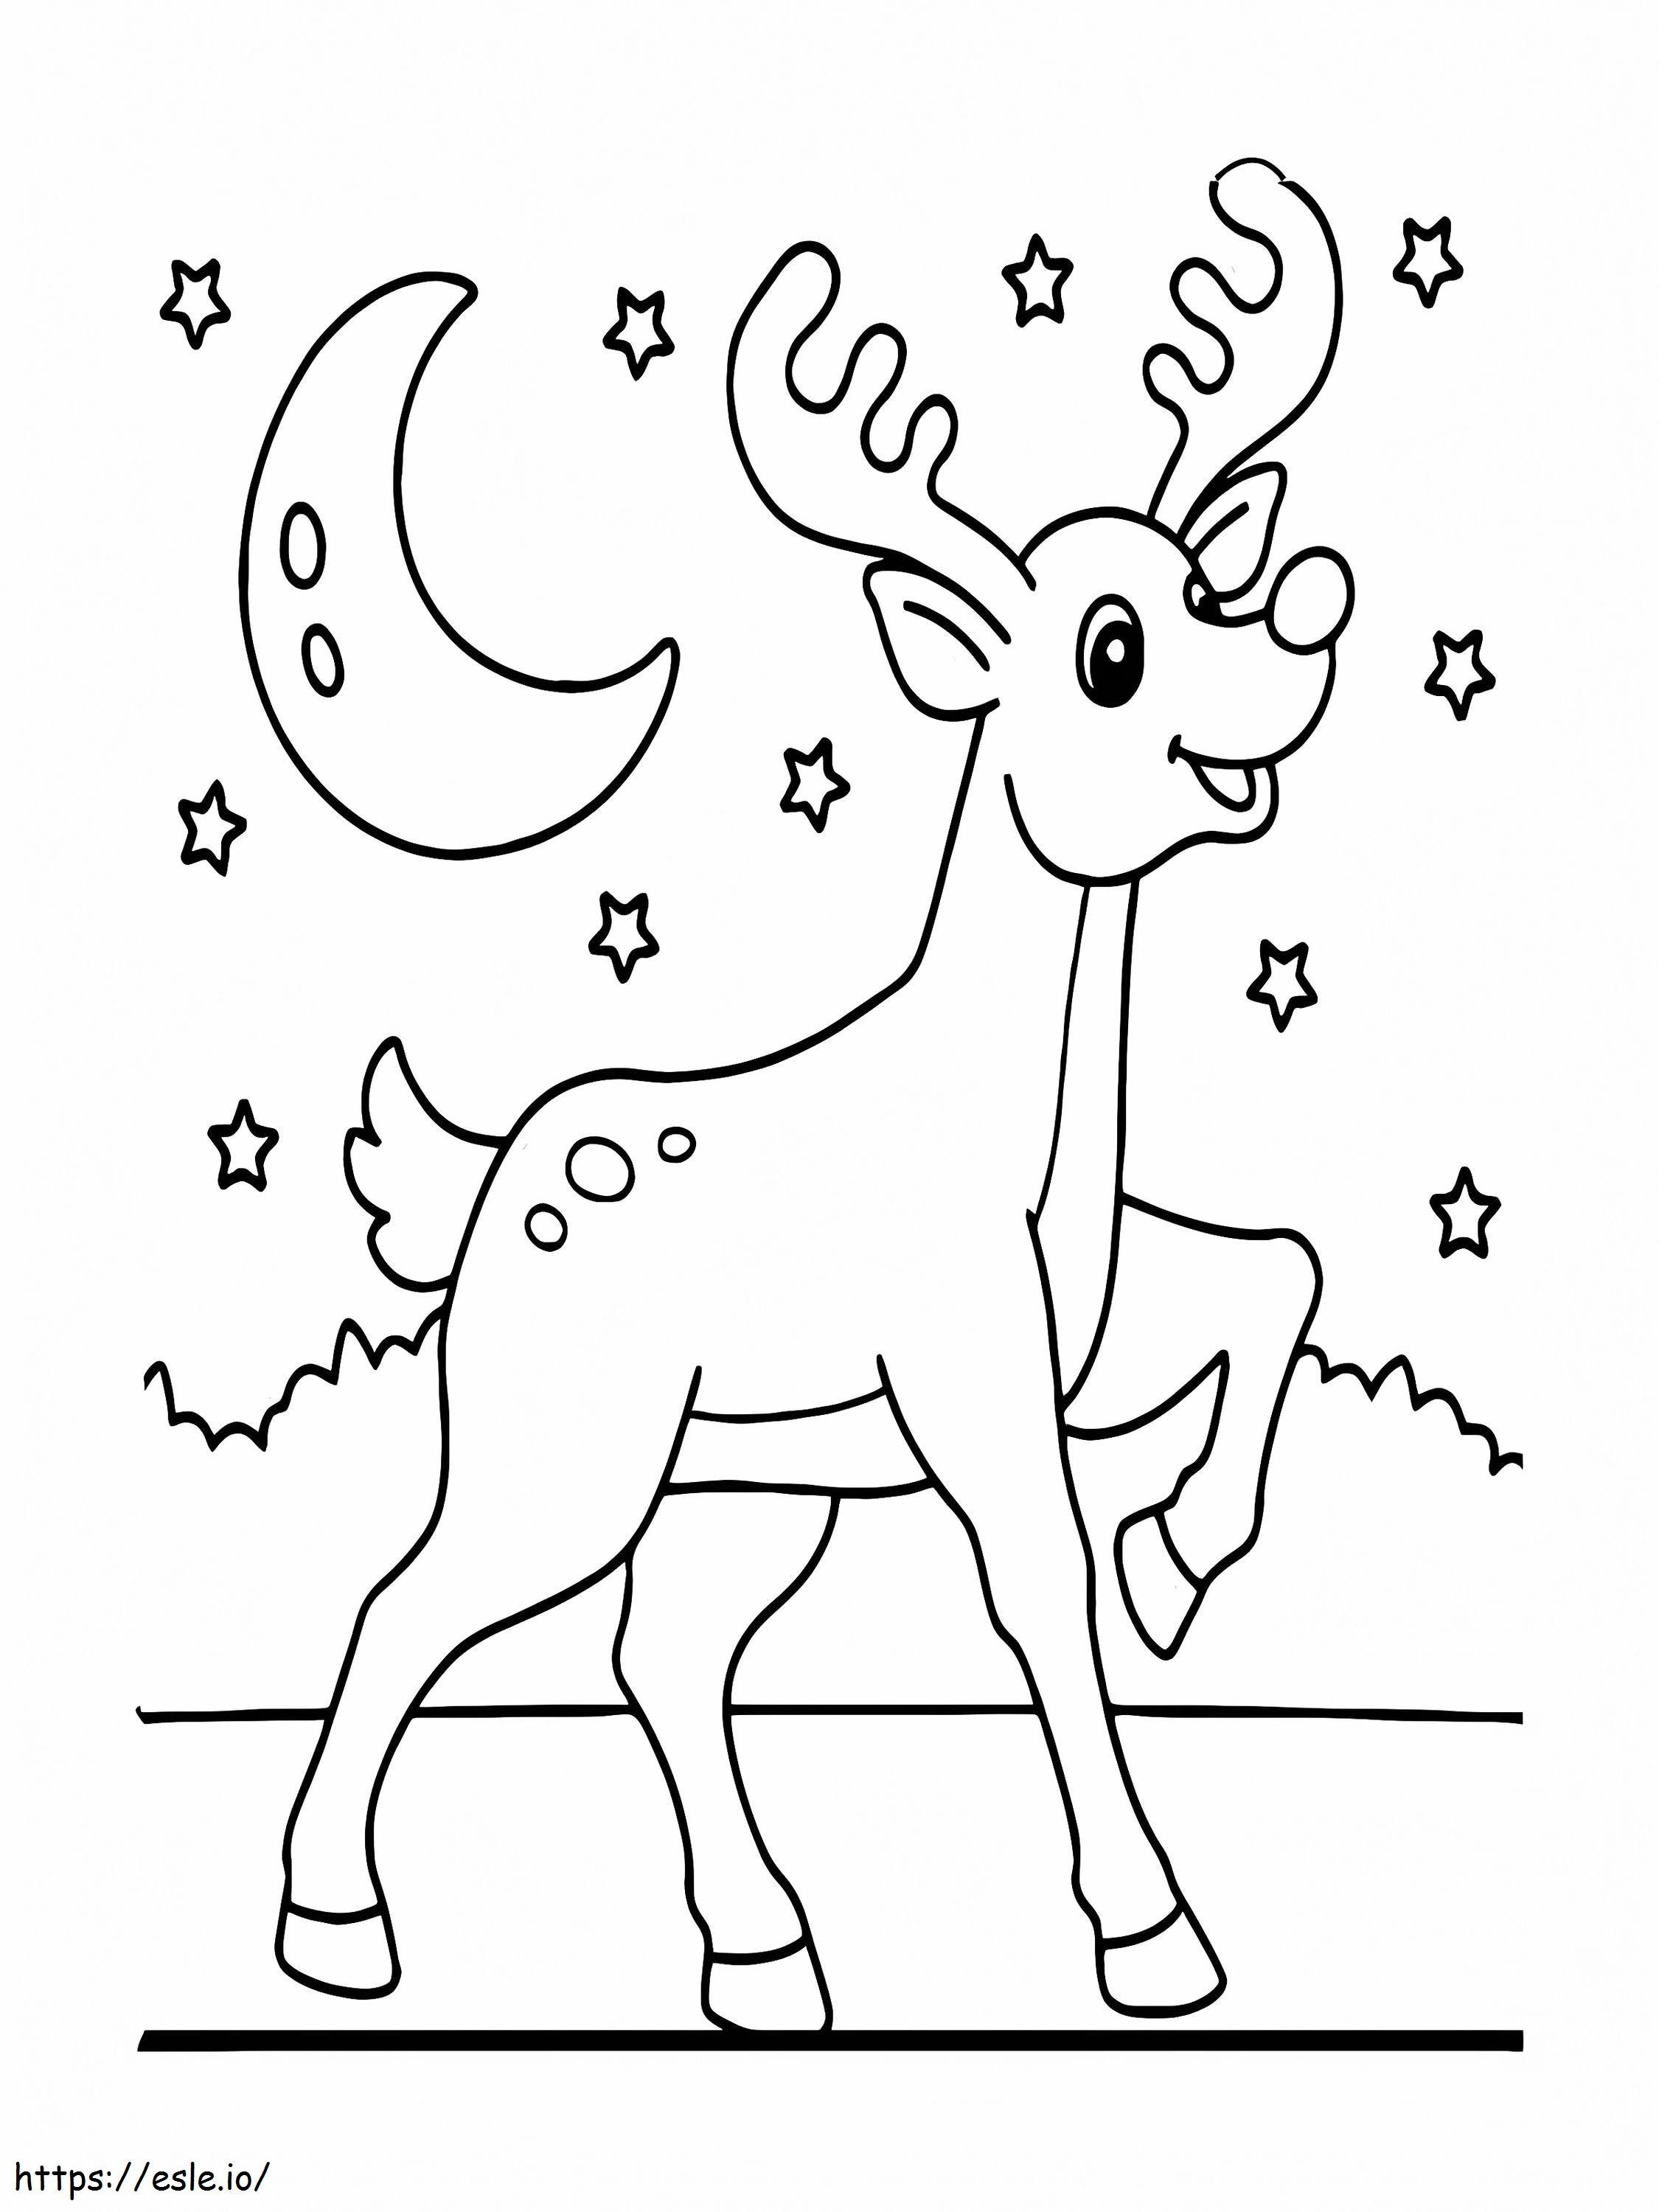 Cheerful Reindeer coloring page